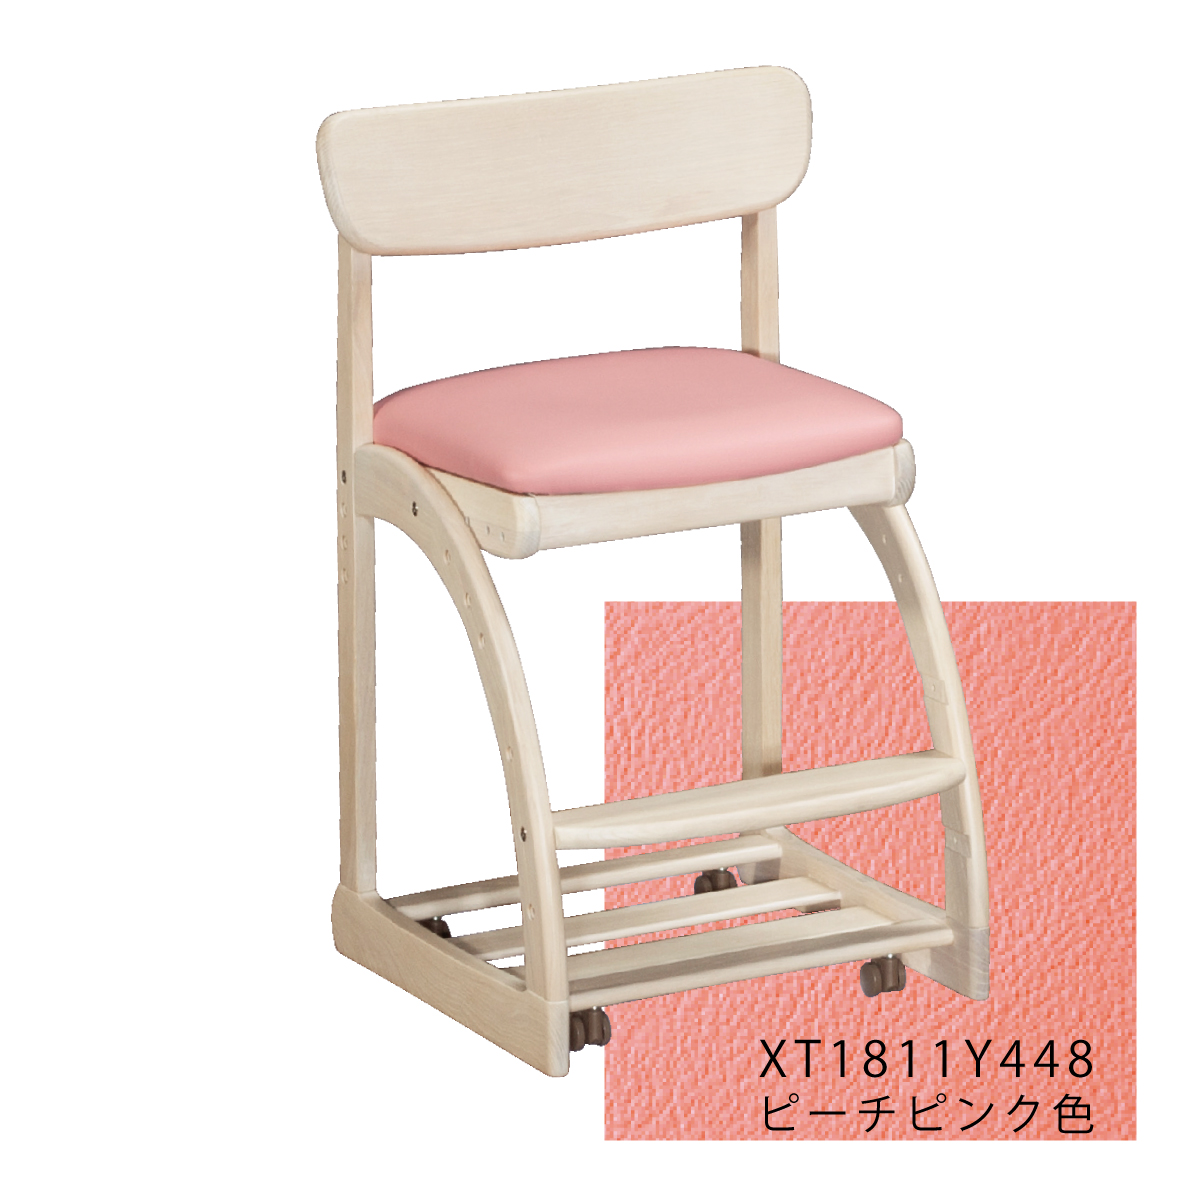 カリモク特約店エーアイディーカリモク 学習椅子 木製 子供椅子 XT1811